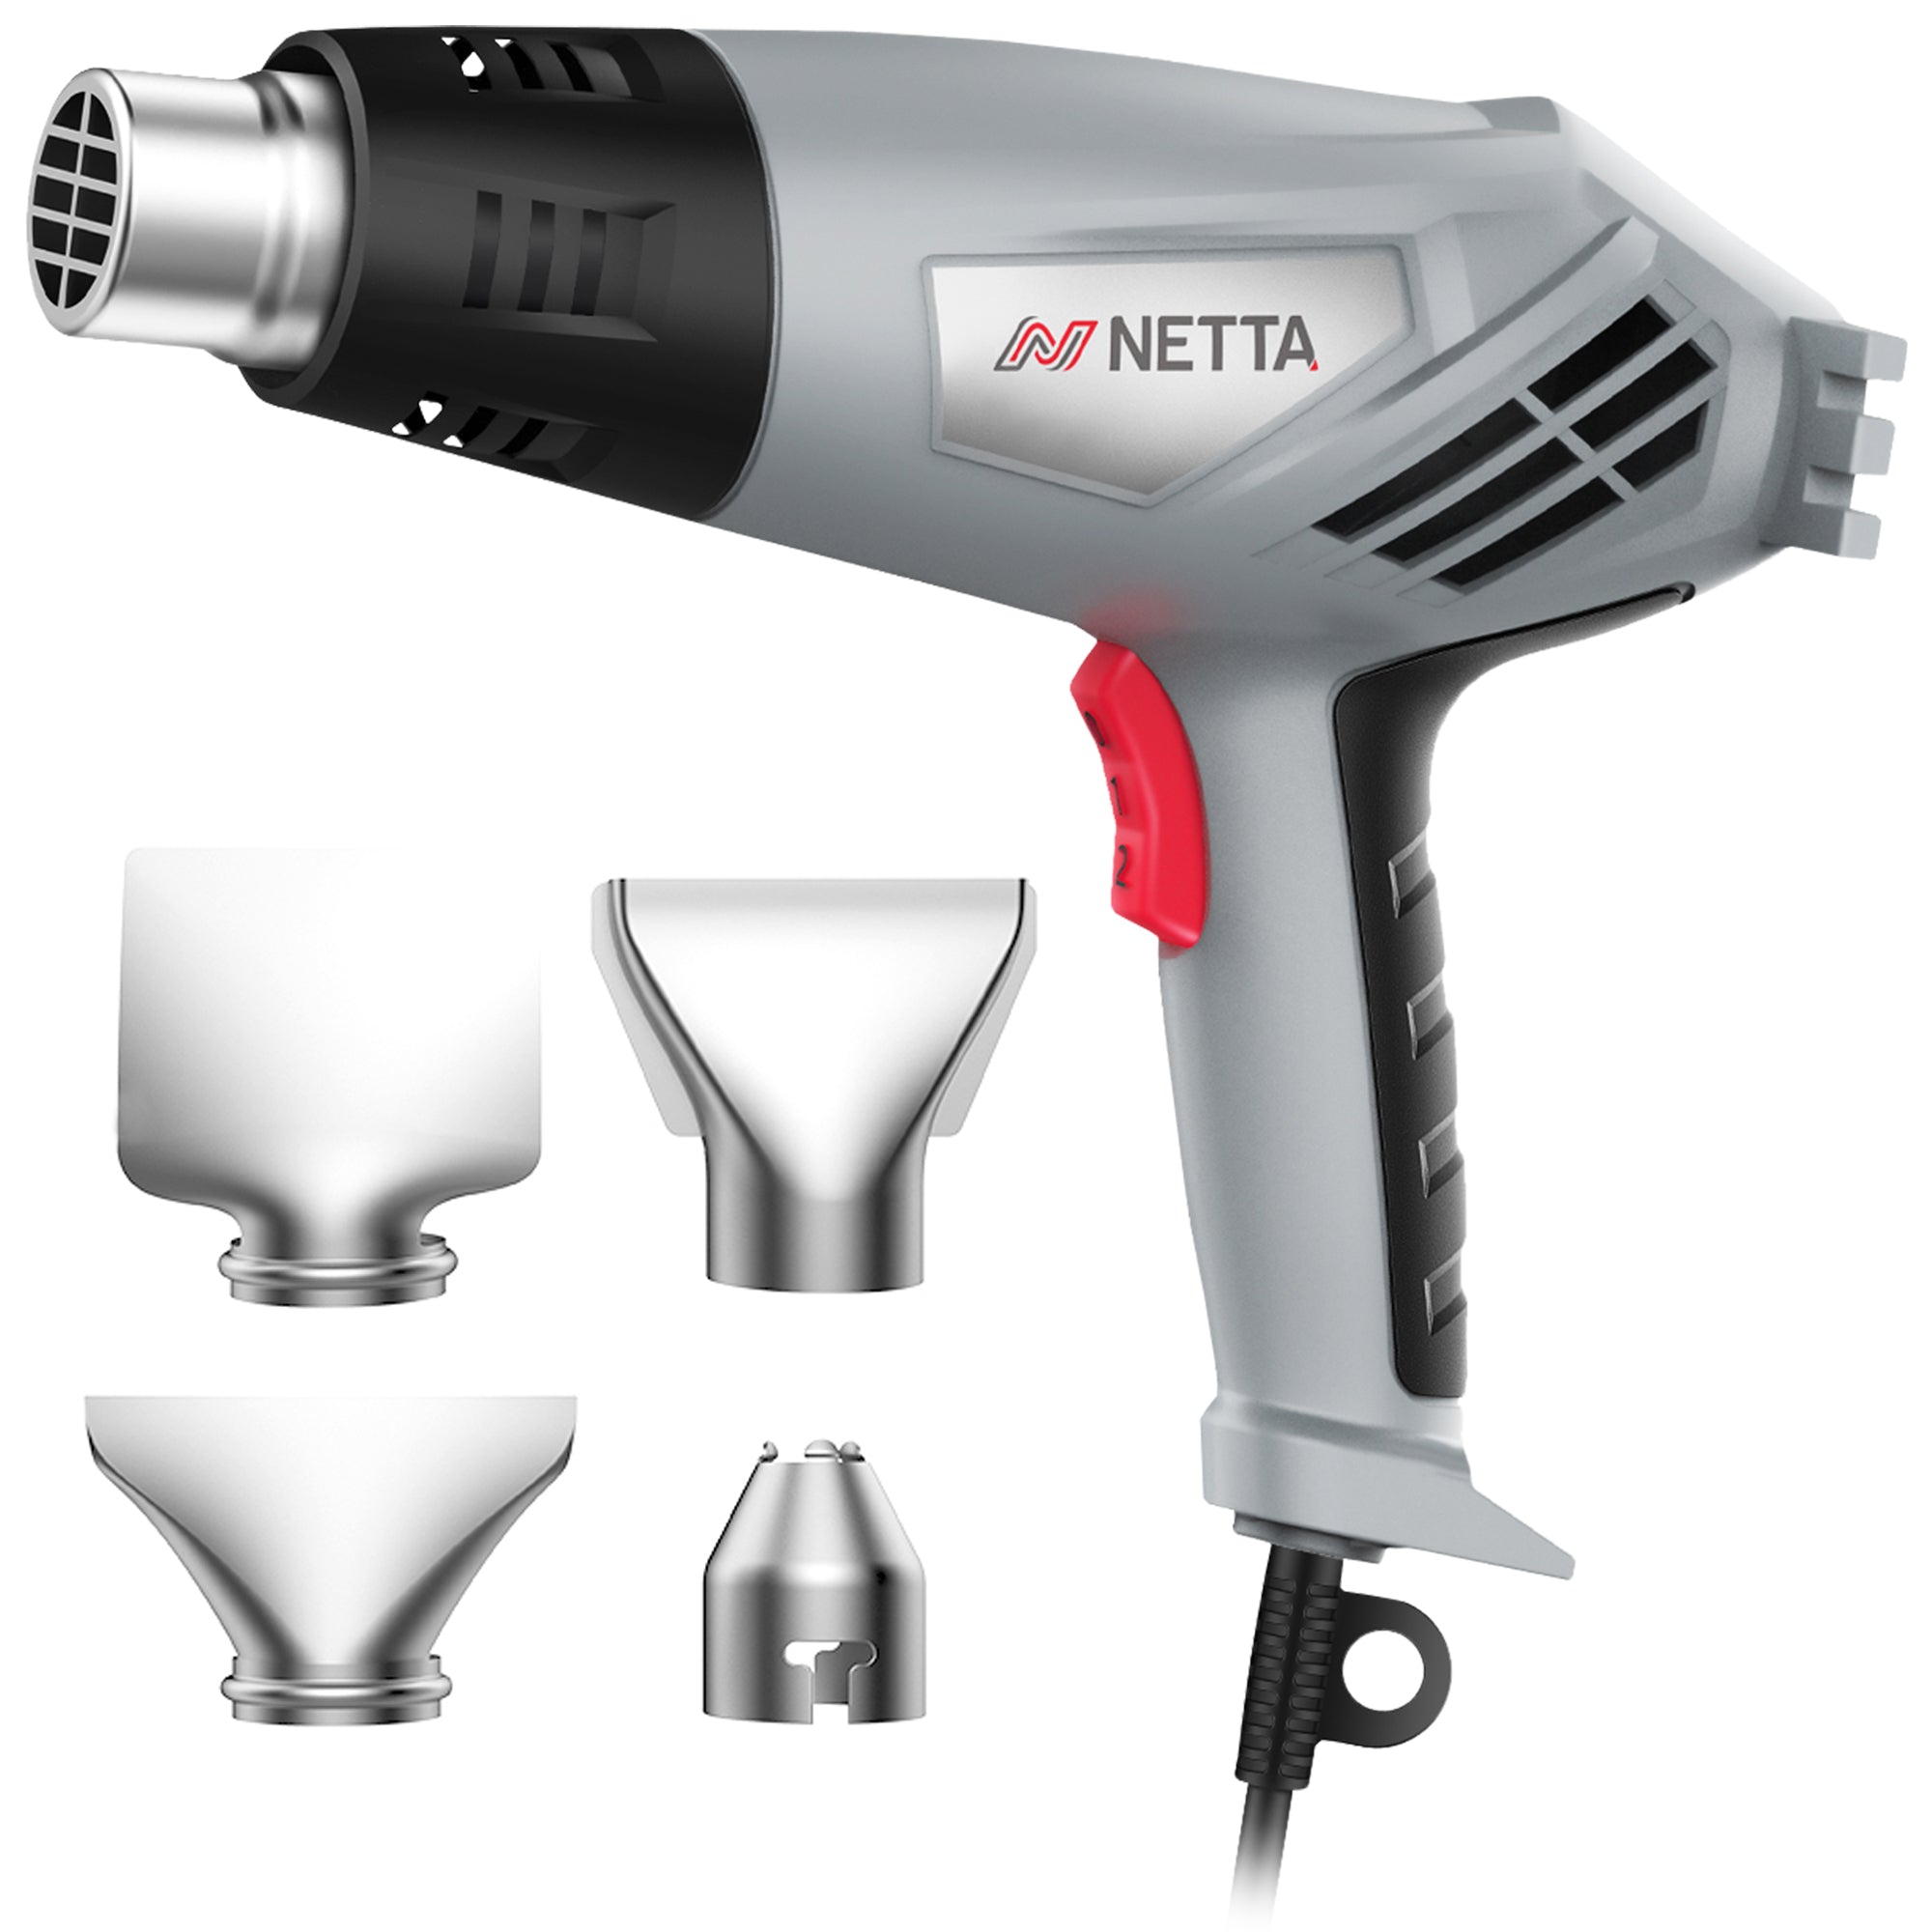 NETTA 2000W Heat Gun with Accessories and Case